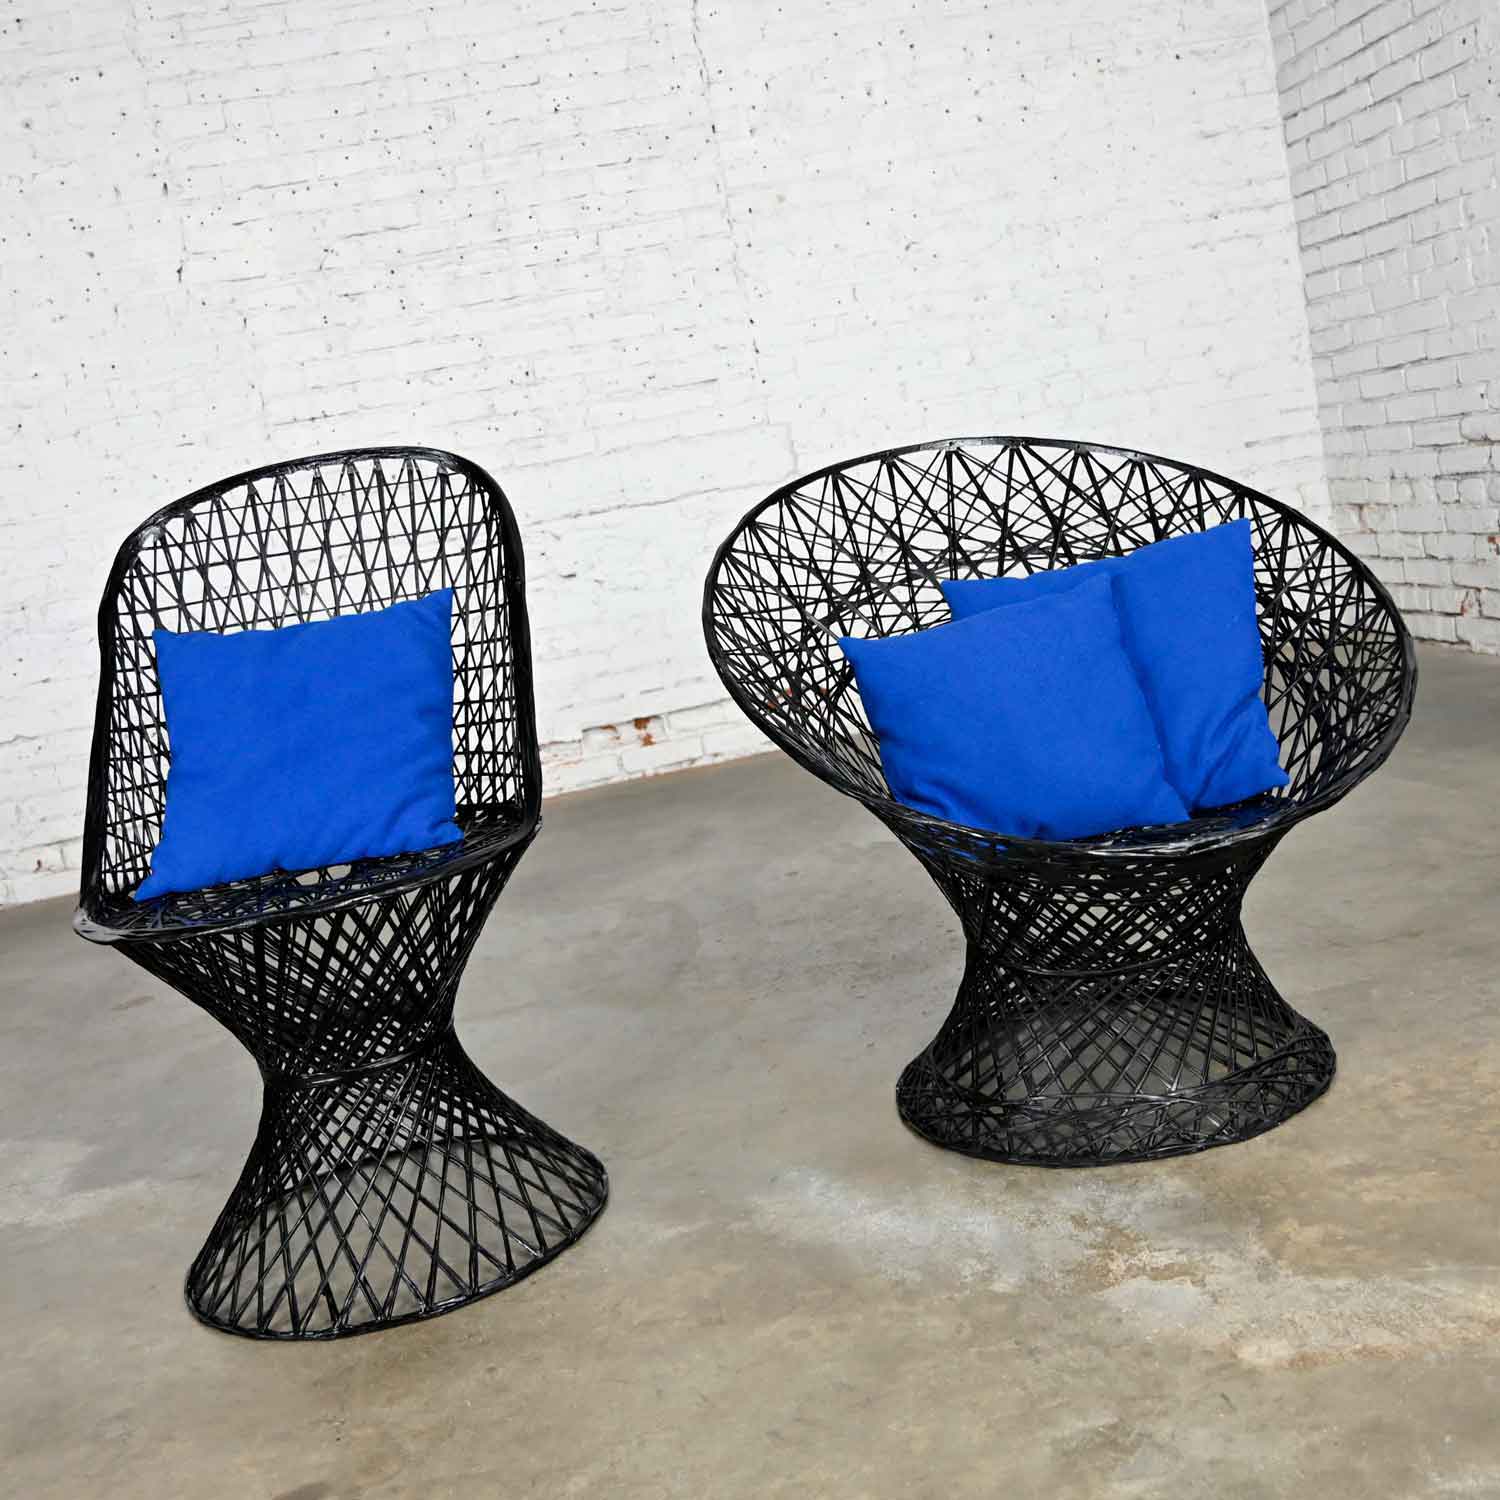 Mid-Century Modern Spun Fiberglass Outdoor Chairs Mismatched Pair 1 Slipper & 1 Hoop Chair